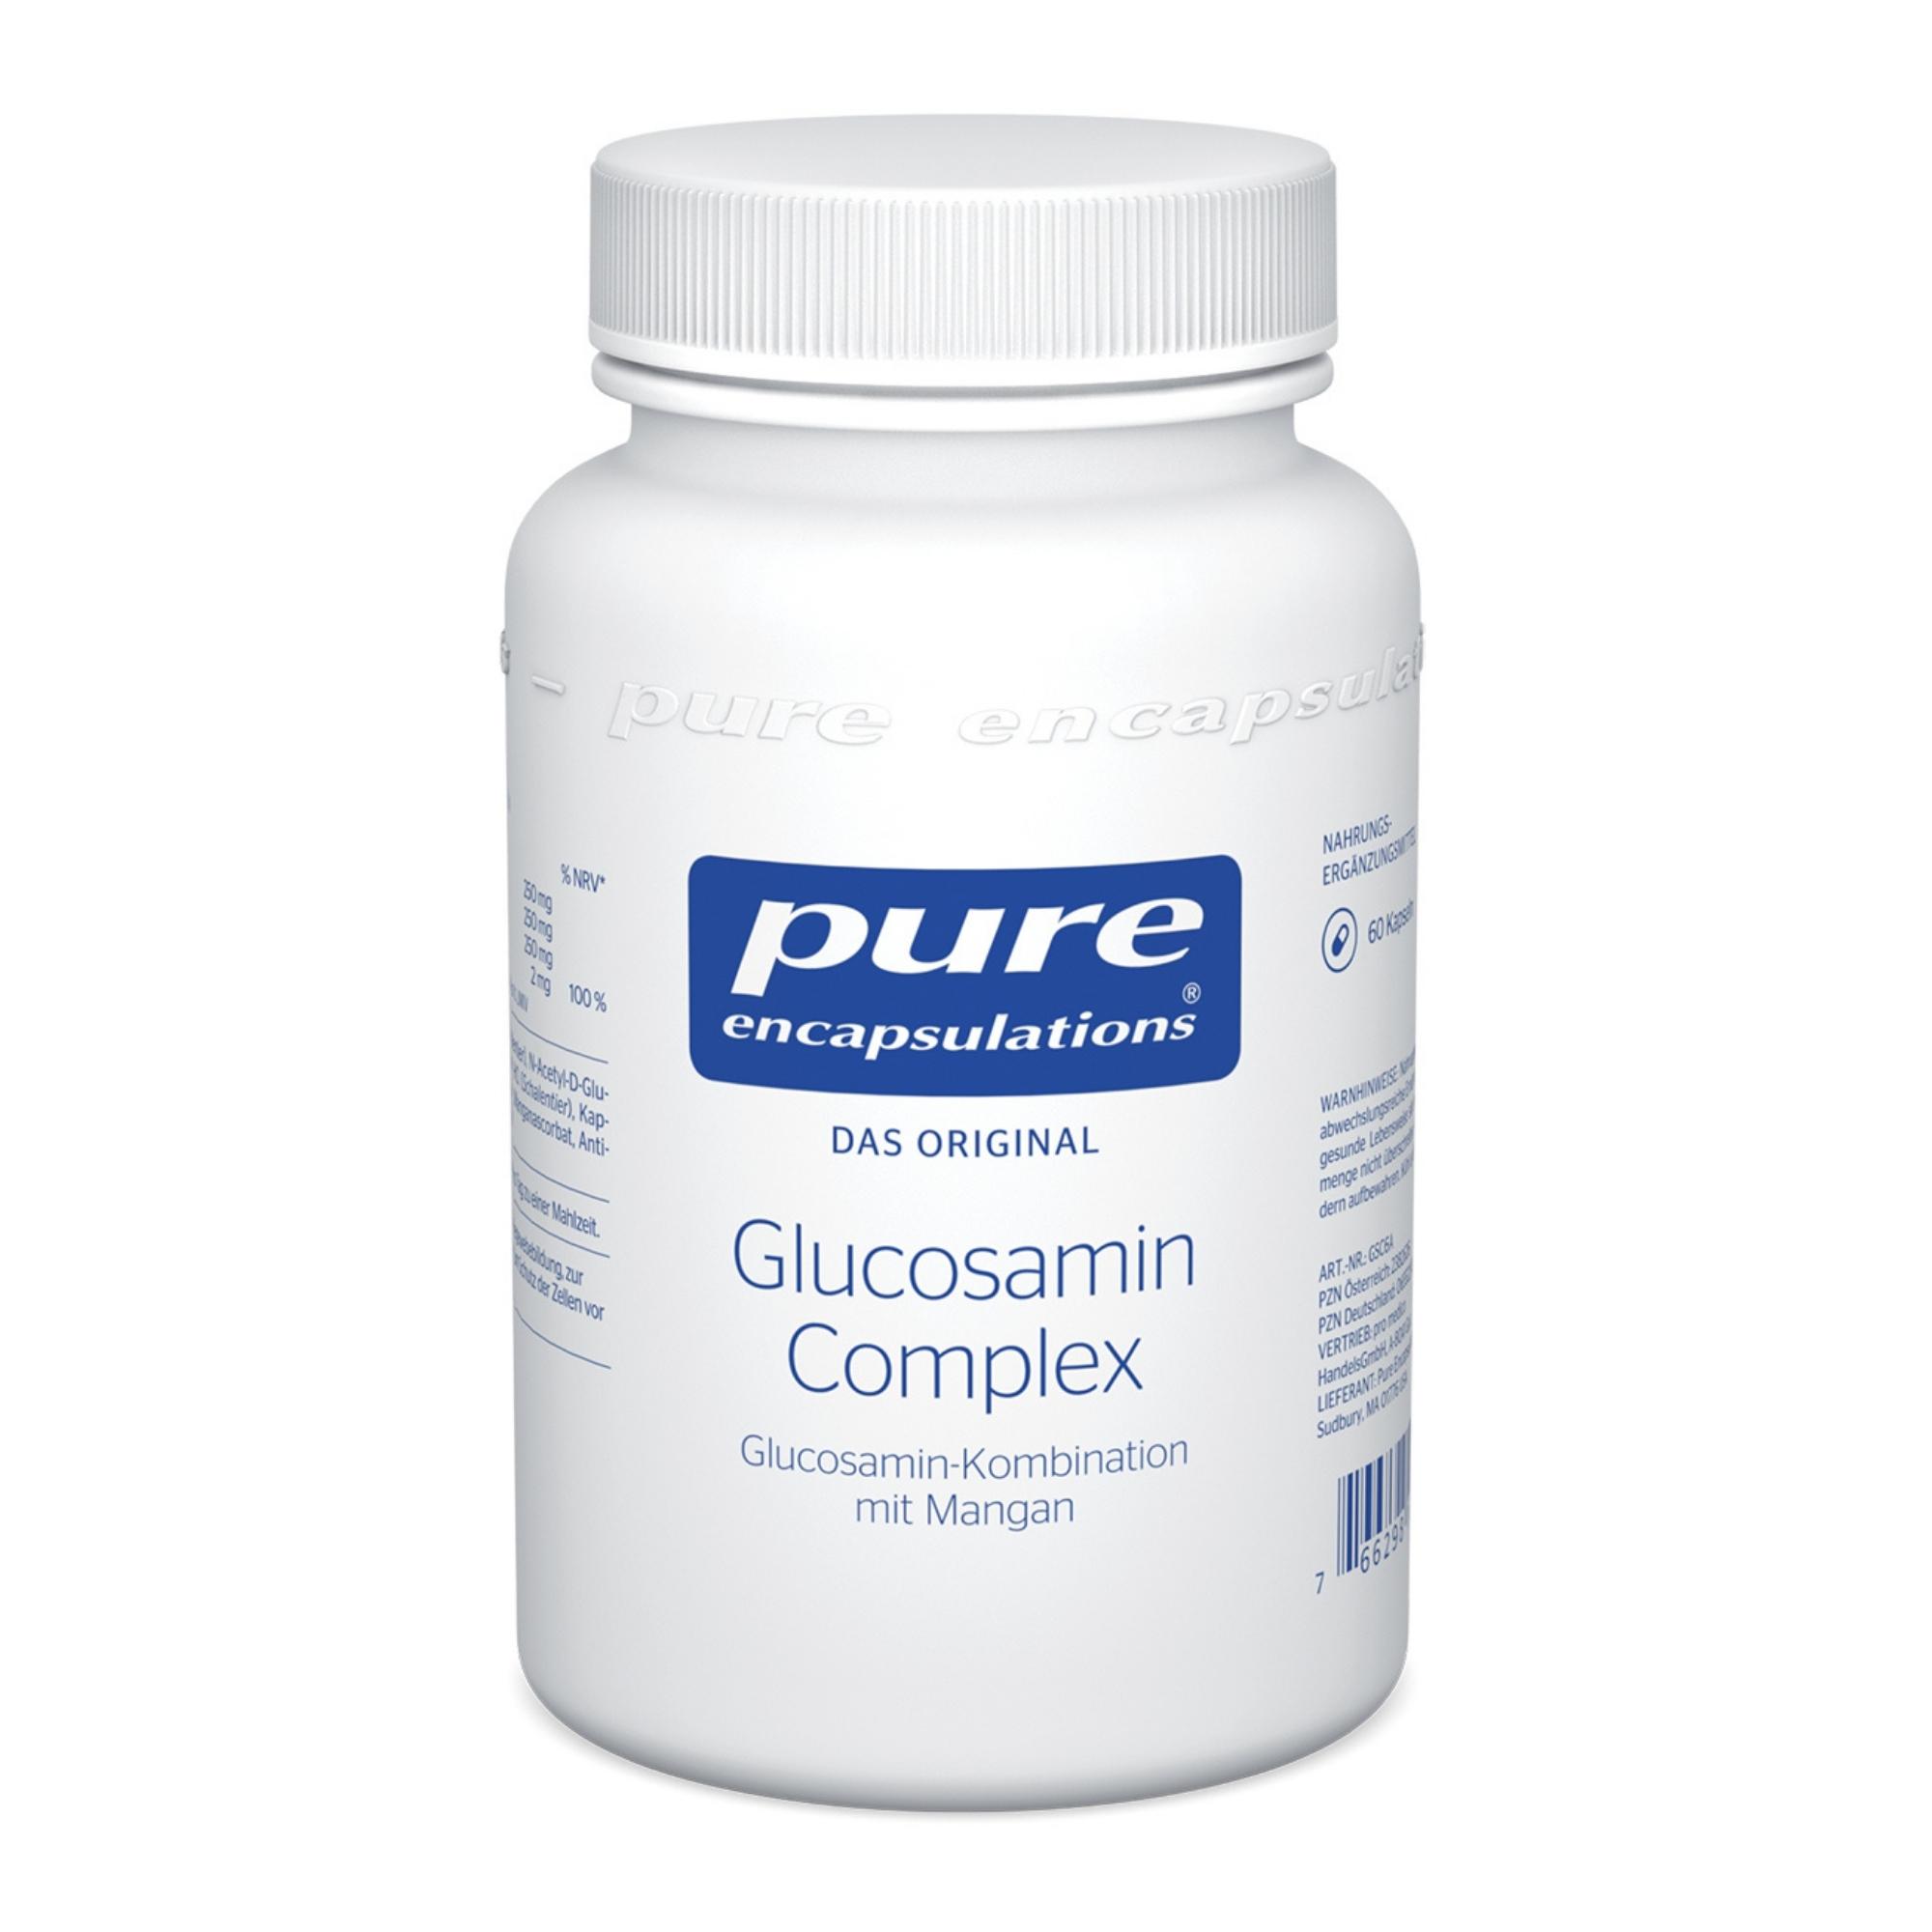 Nahrungsergänzungsmittel mit Glucosamin-Kombination und Mangan.